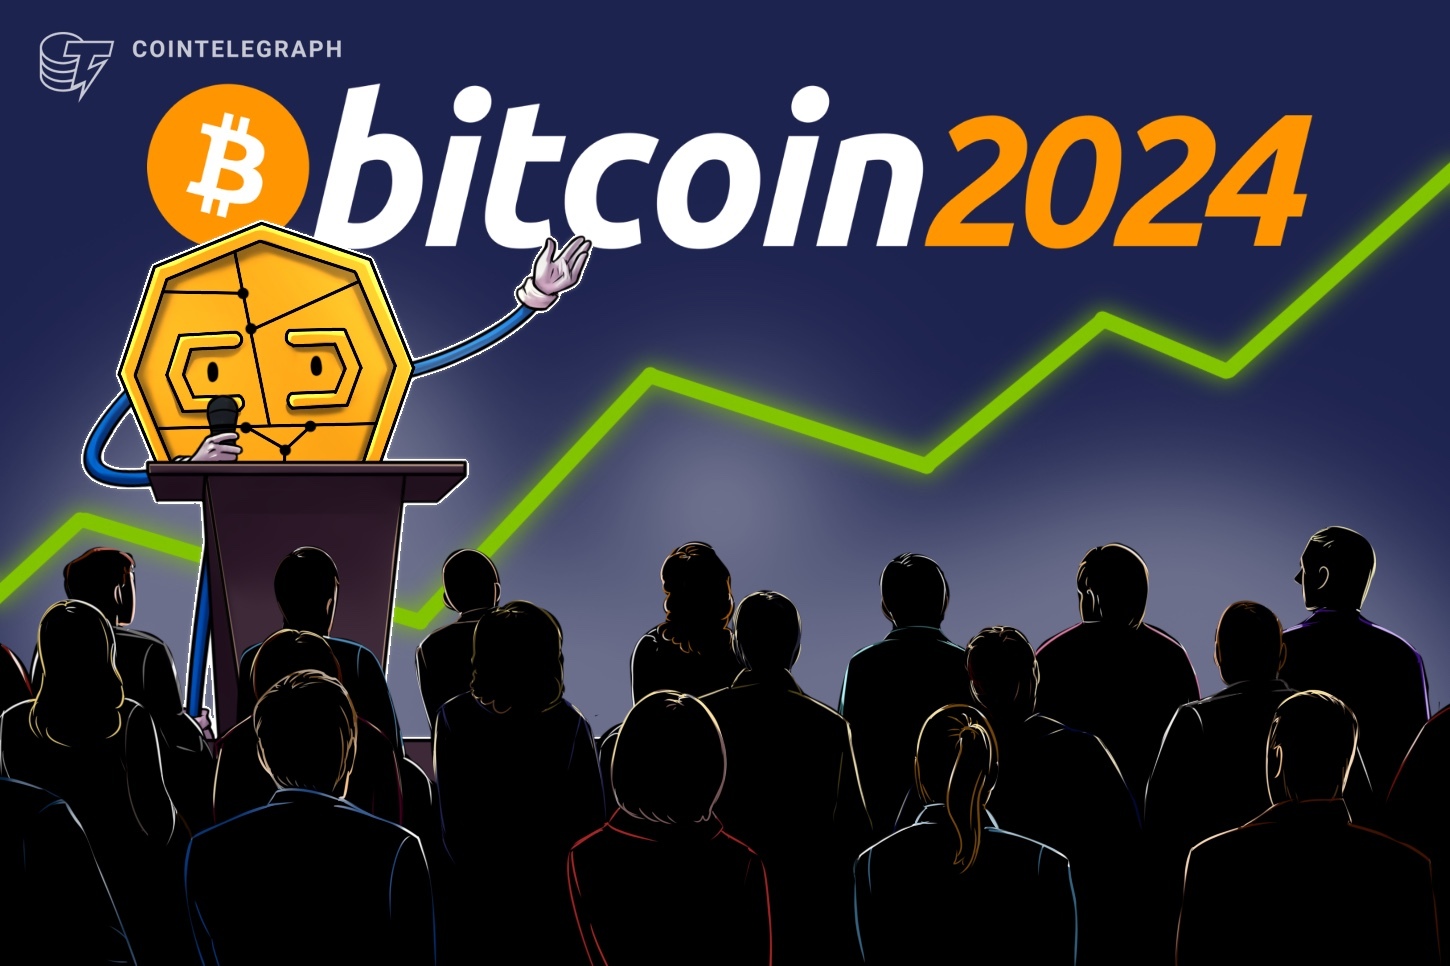 Ứng cử viên Thượng viện Mỹ tìm kiếm cơ hội tăng trưởng từ tiền điện tử tại Bitcoin 2024